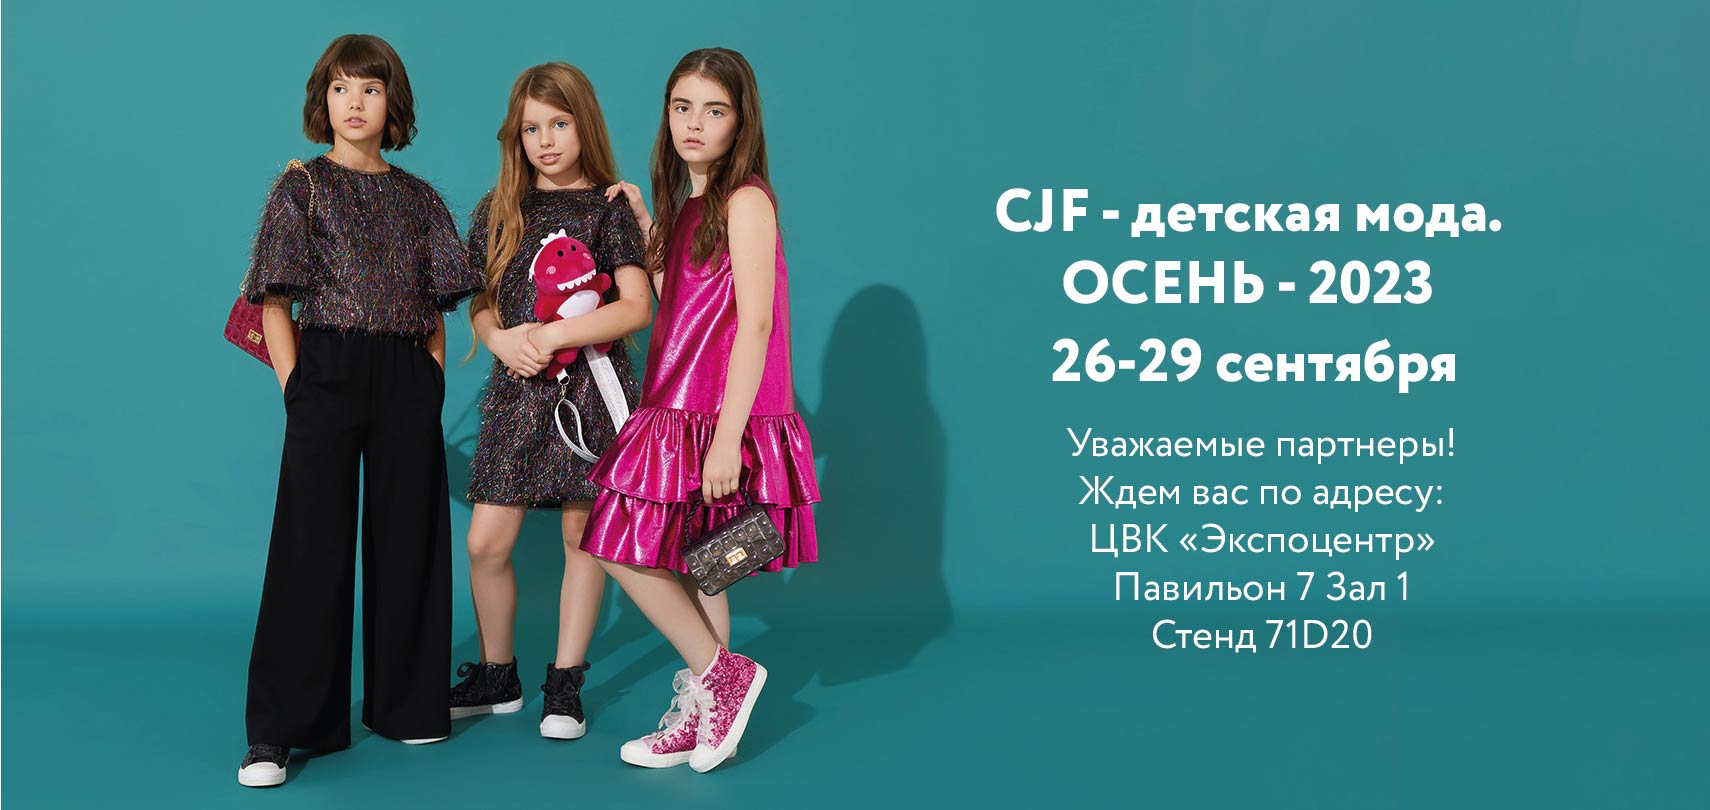 Выставка CJF-детская мода. Осень  2023.